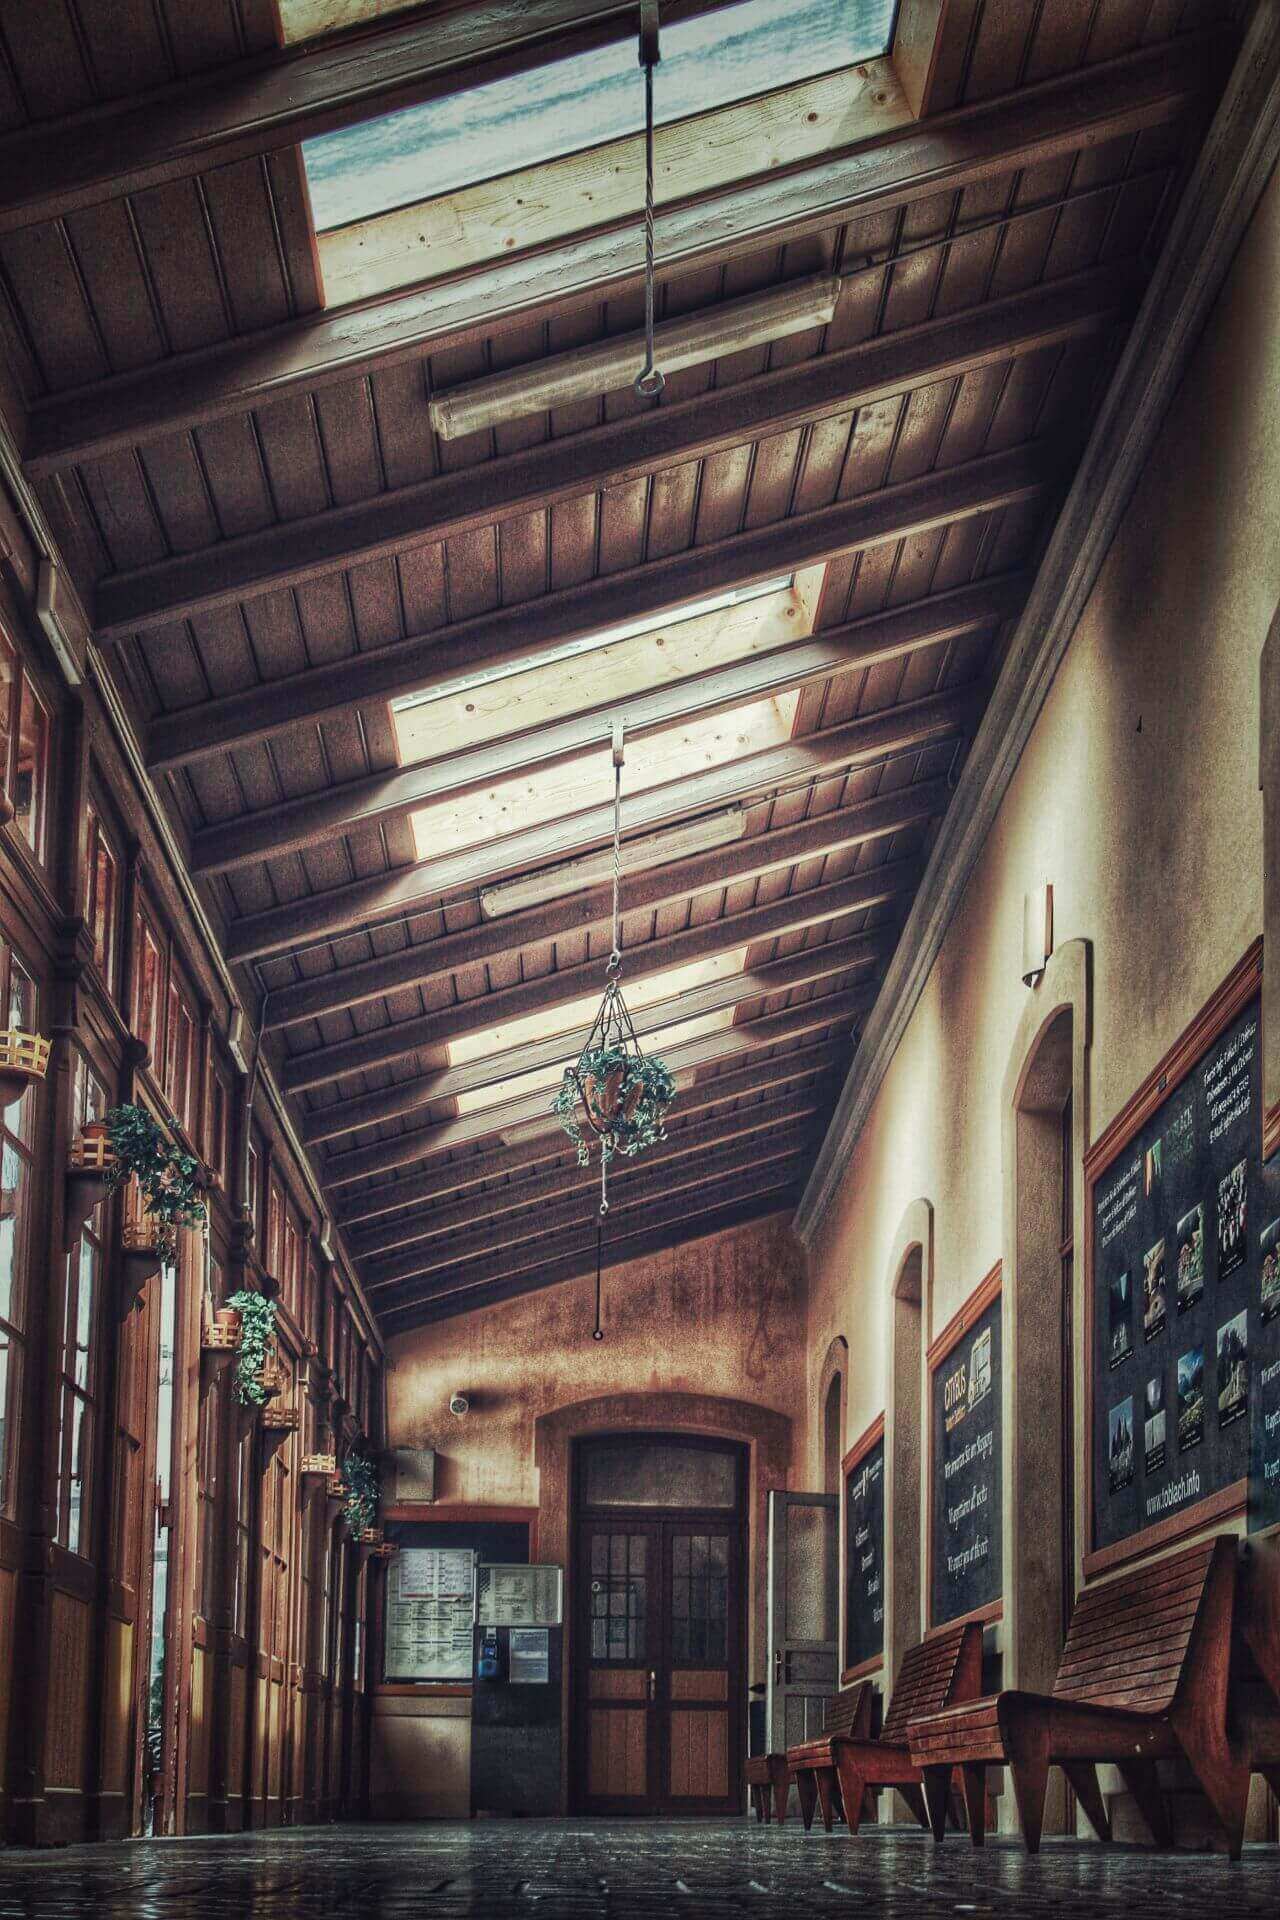 Die Wartehalle eines alten Bahnhofs im schummrigen Licht ©Rene Gropp